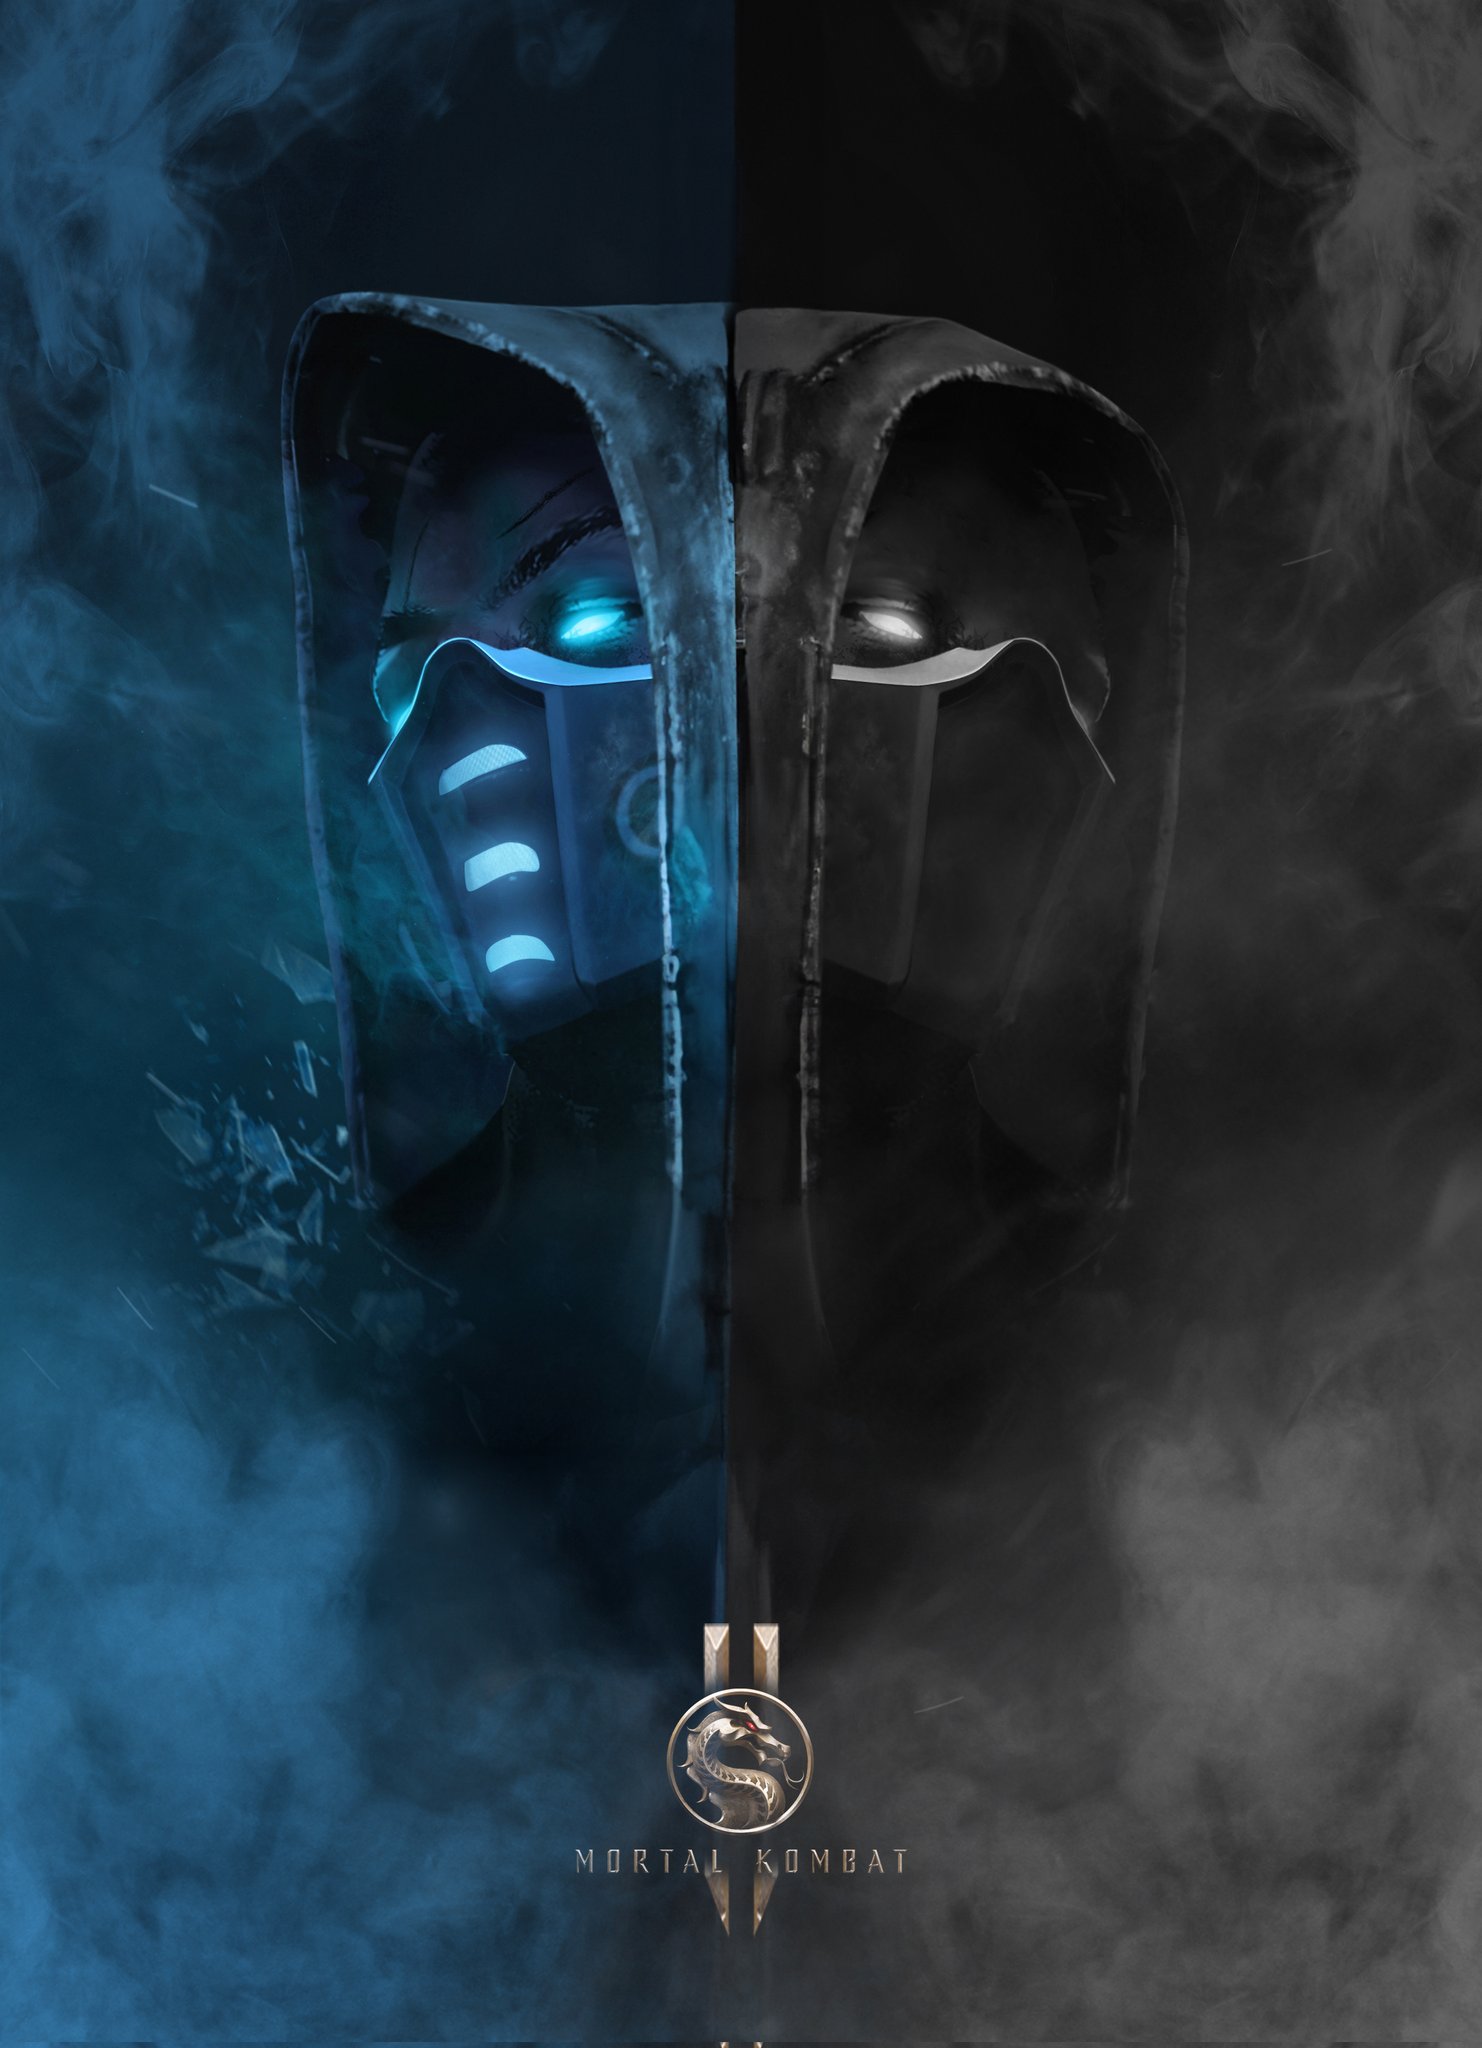 Вышел постер фильма Mortal Kombat 2 от художника